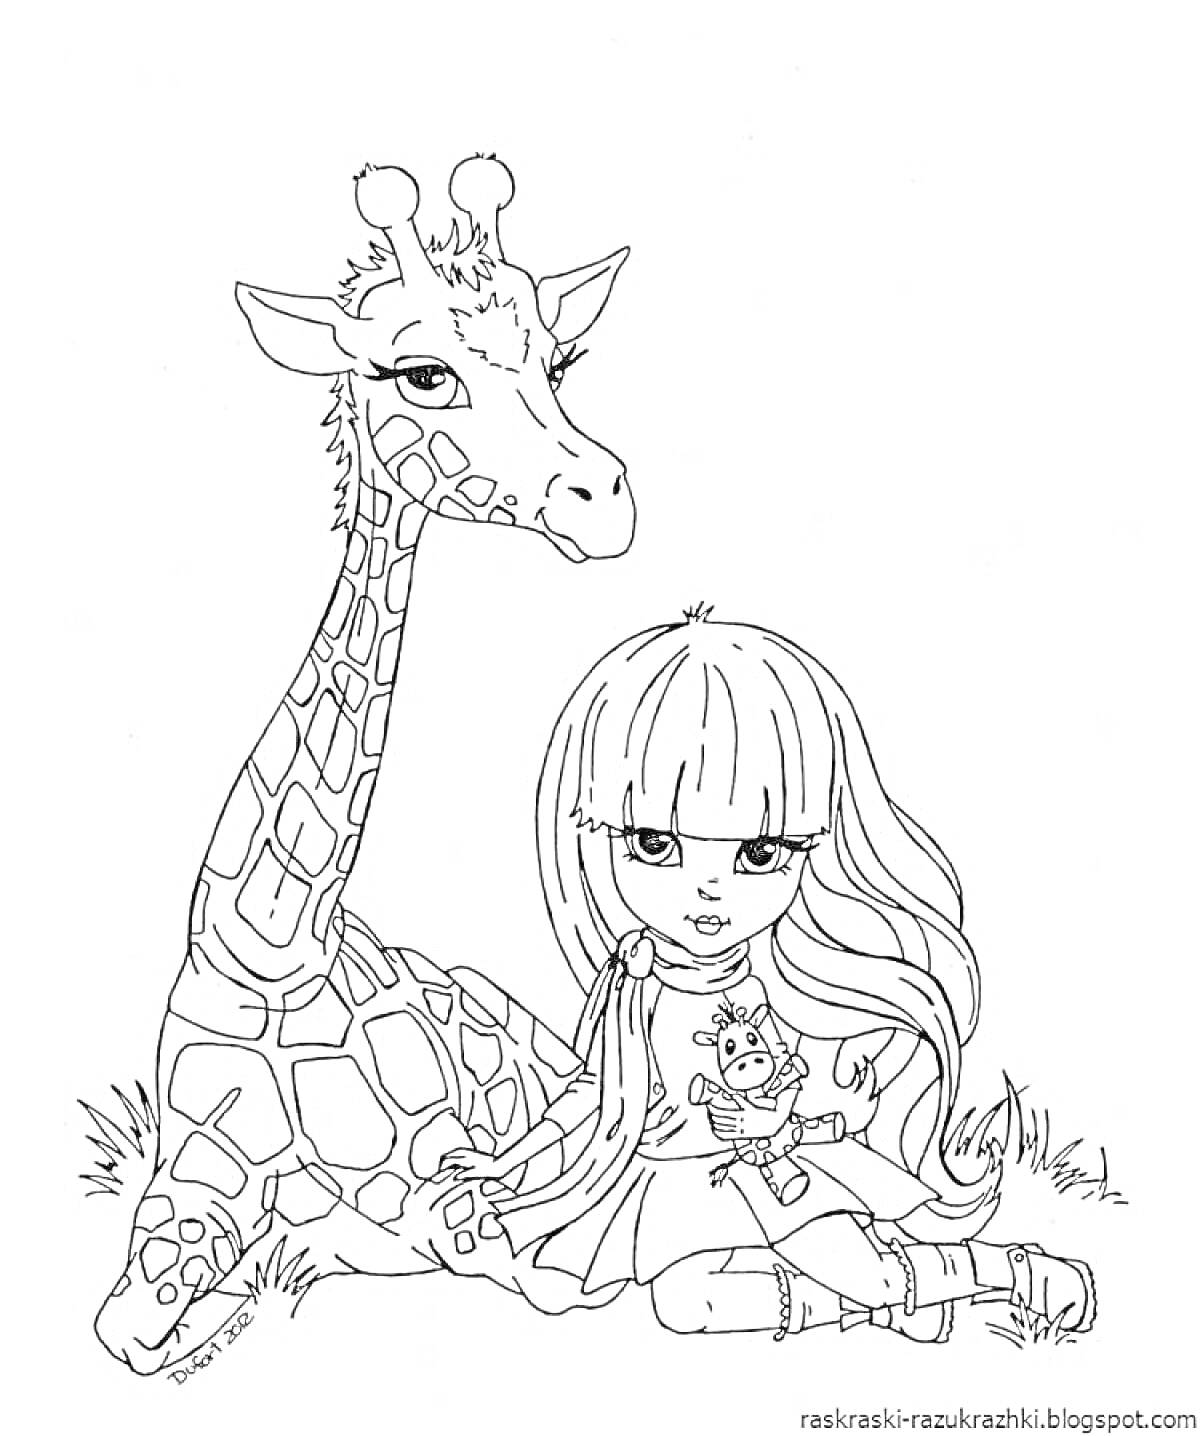 Девочка с длинными волосами и челкой, сидящая рядом с жирафом и прижимающая к себе маленького енота